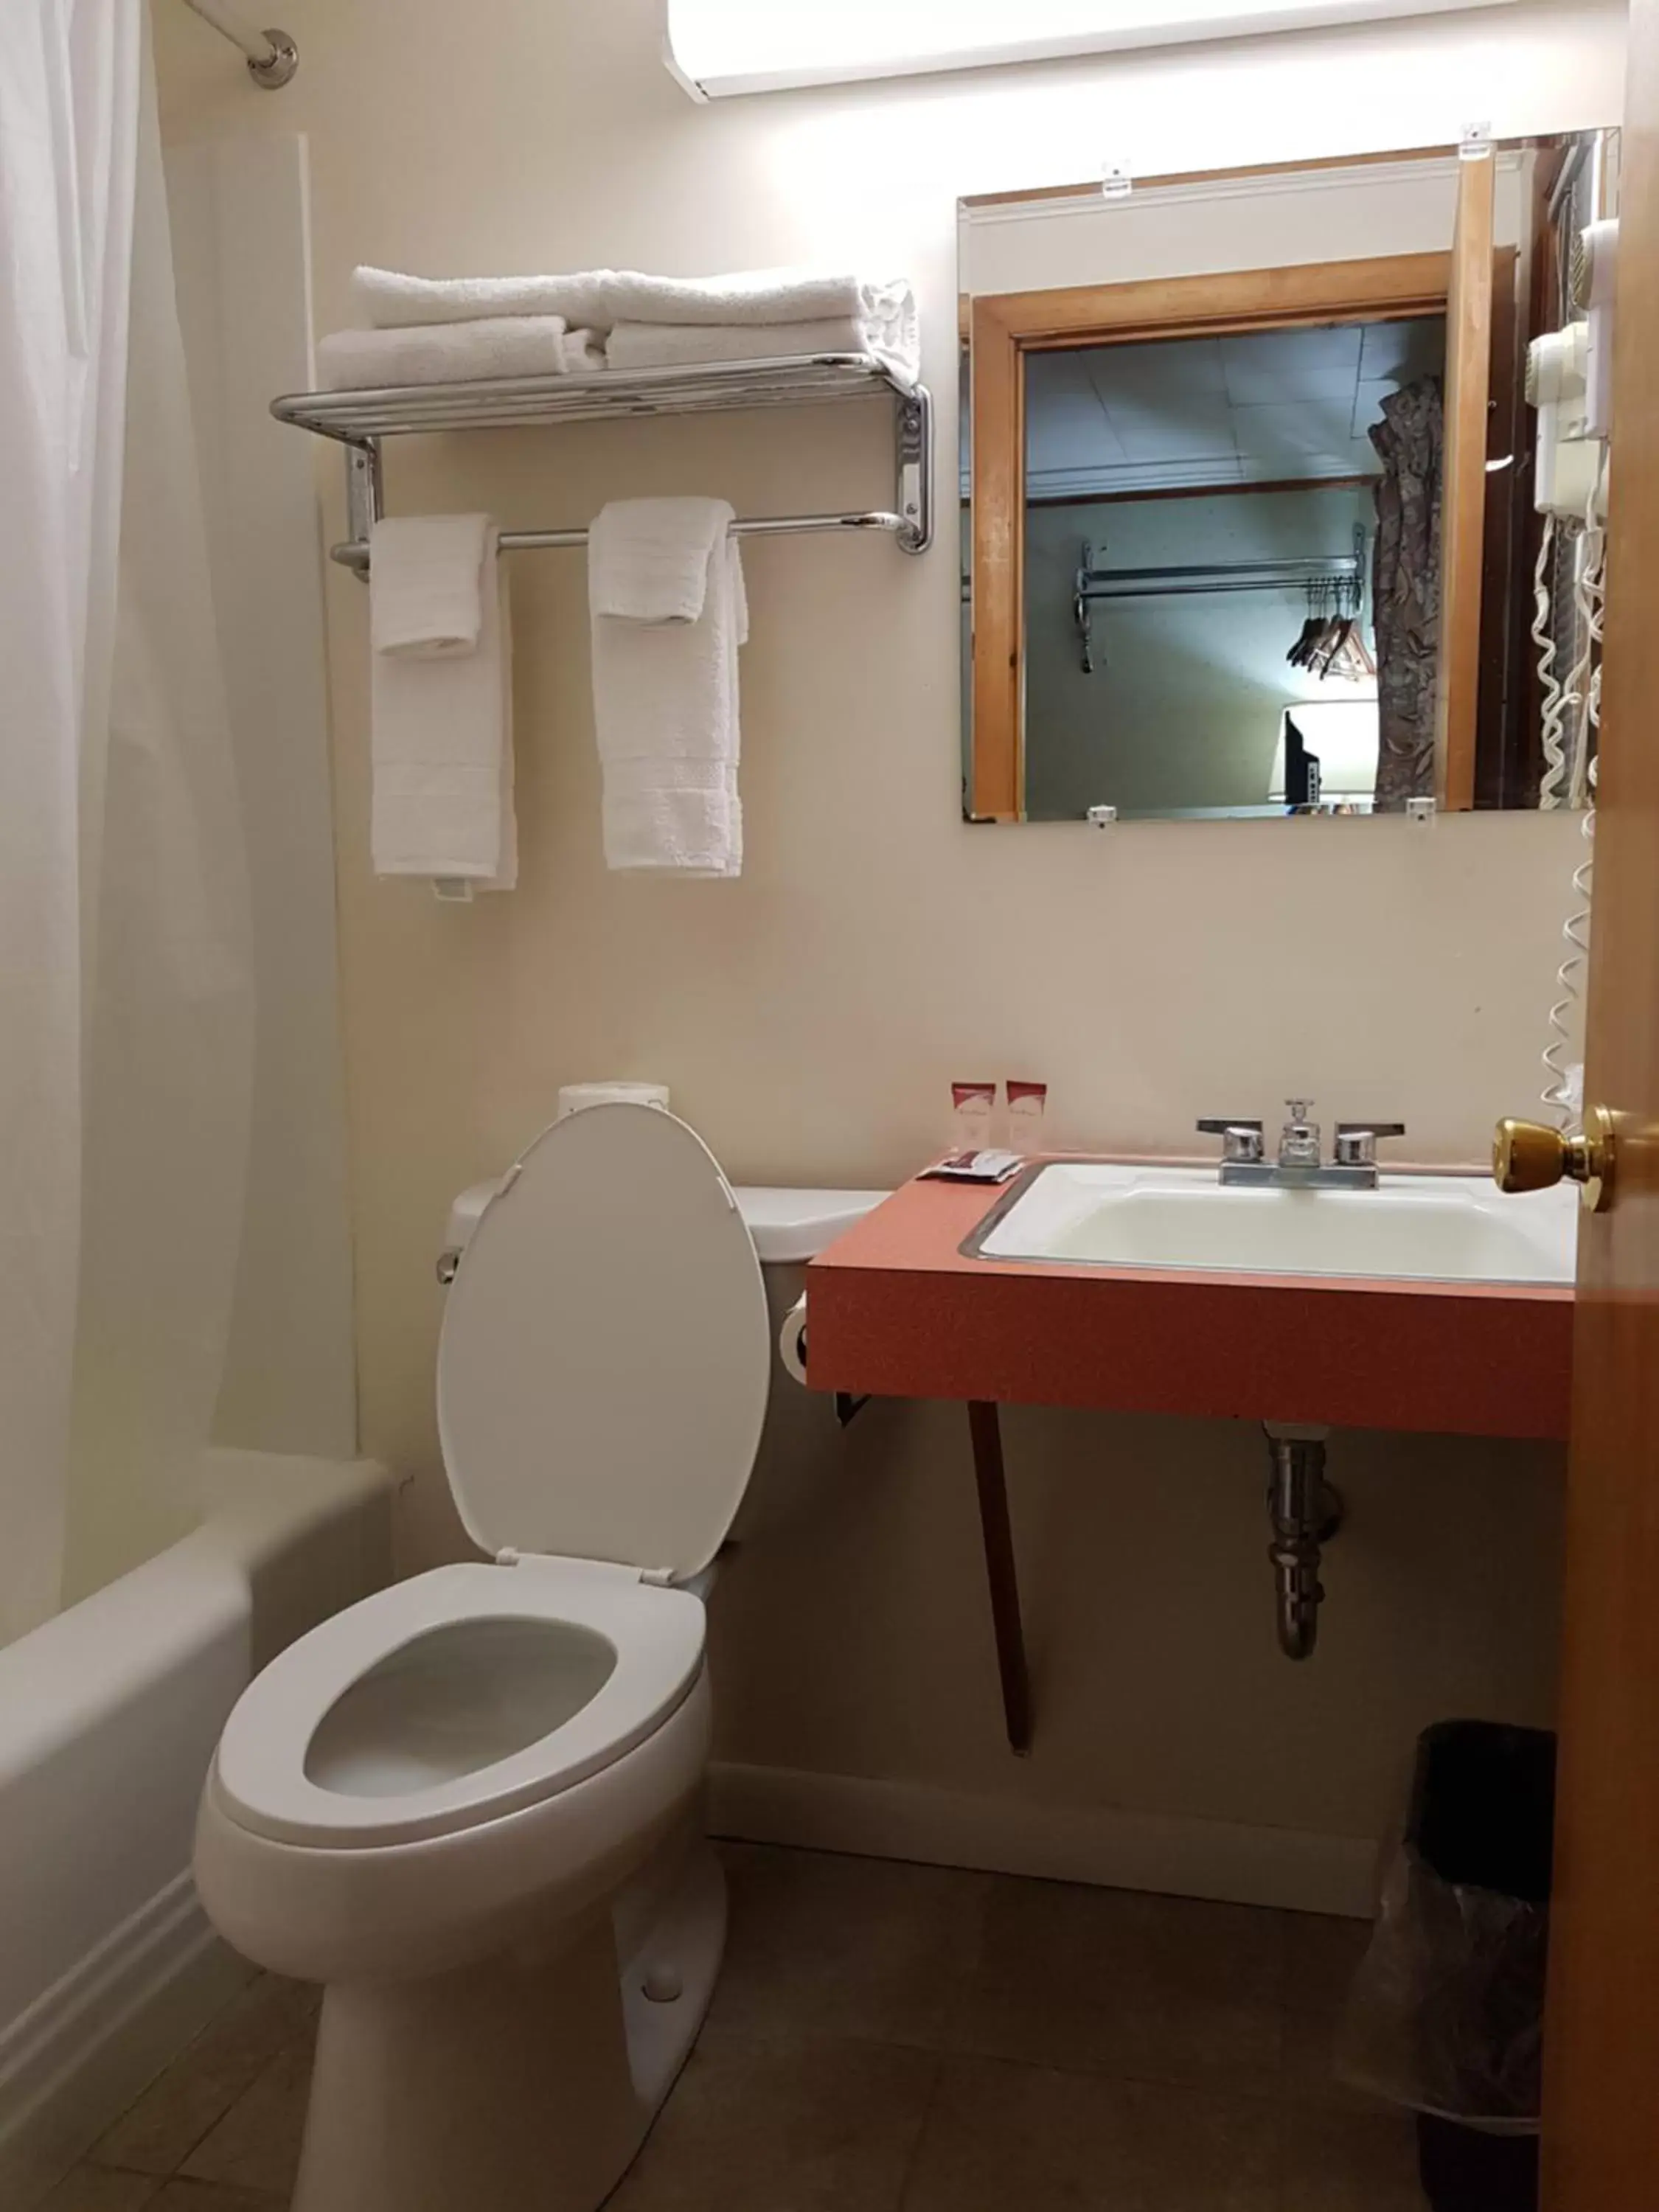 Bathroom in Franconia Notch Motel